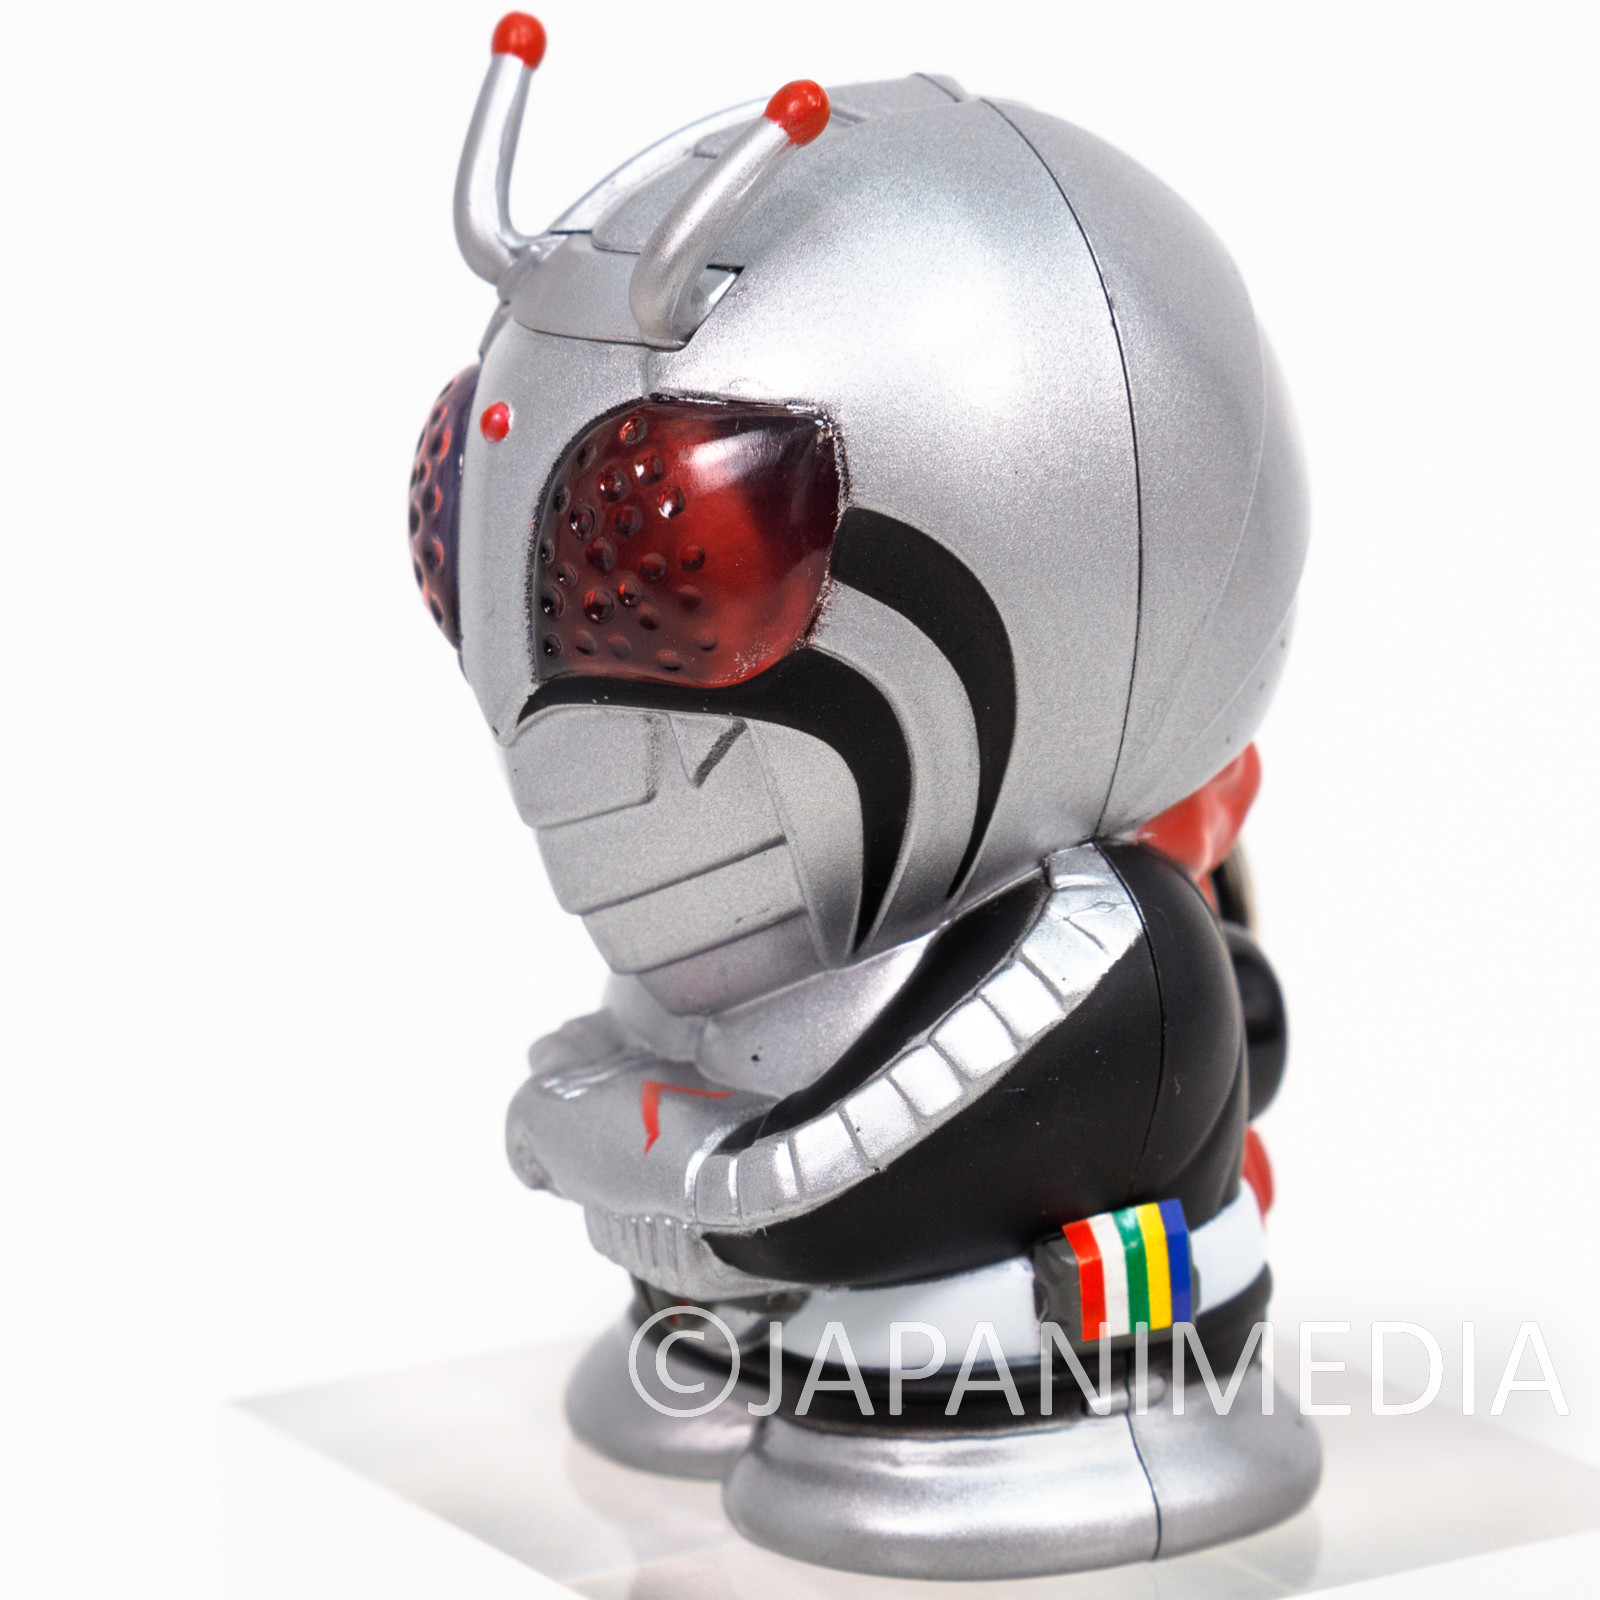 Kamen Rider Masked Rider Super-1 Figure Keychain JAPAN TOKUSATSU